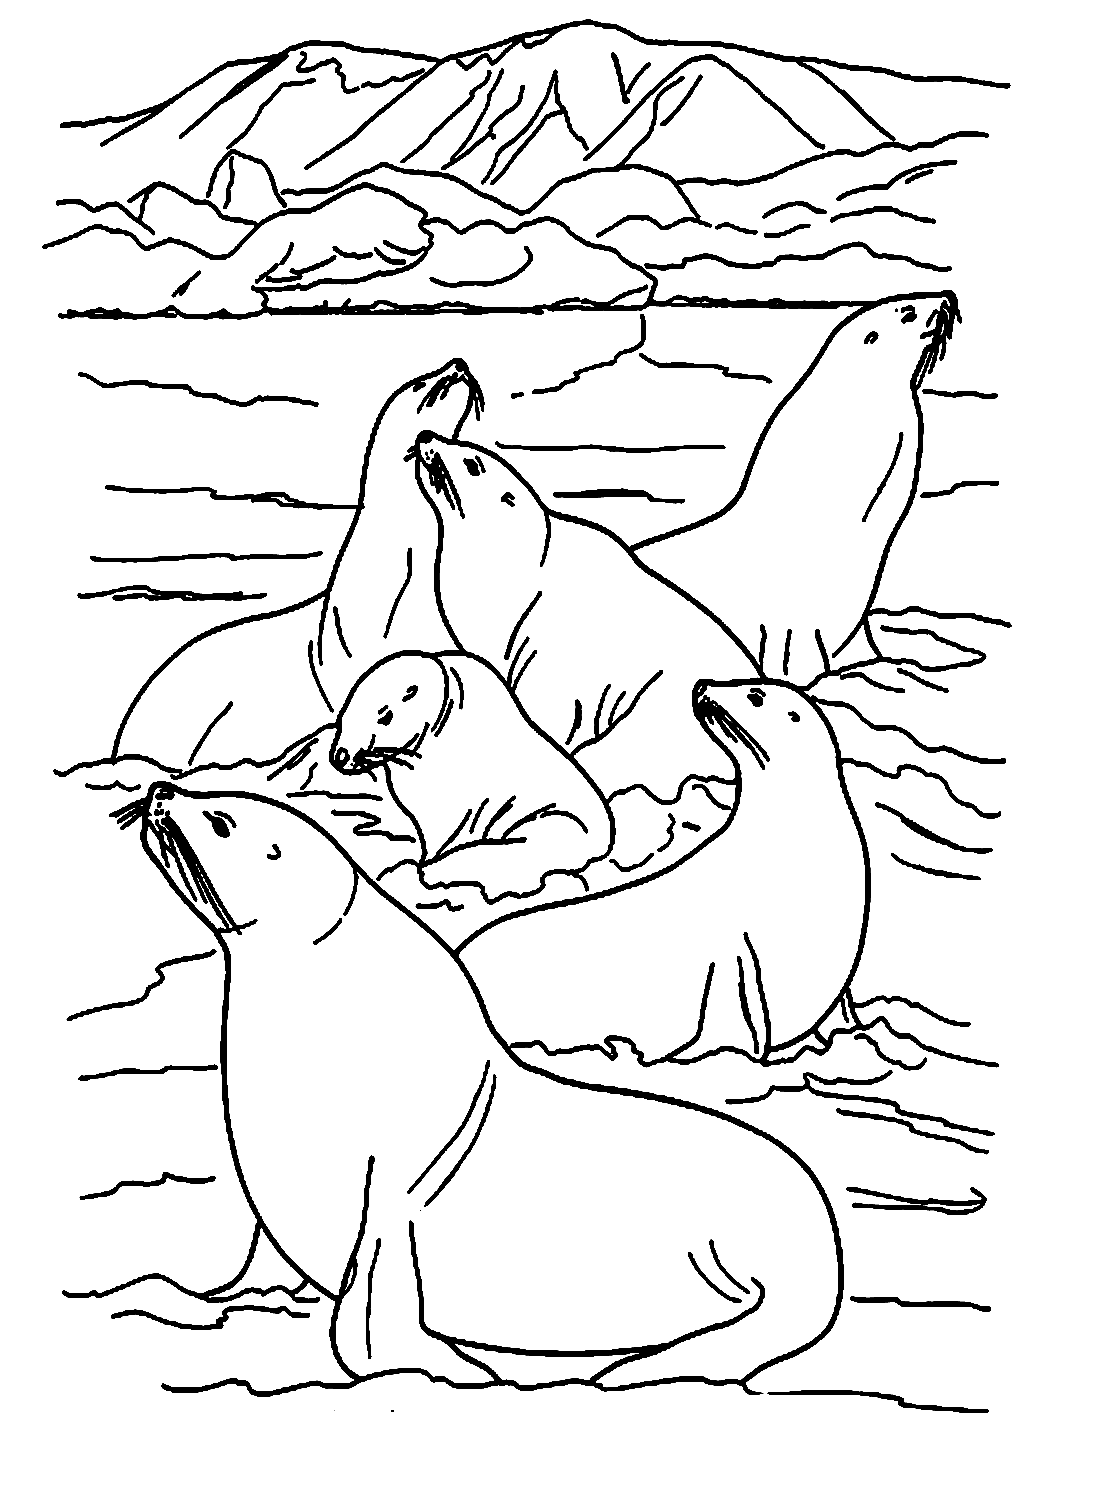 Плот морских львов из Морского льва